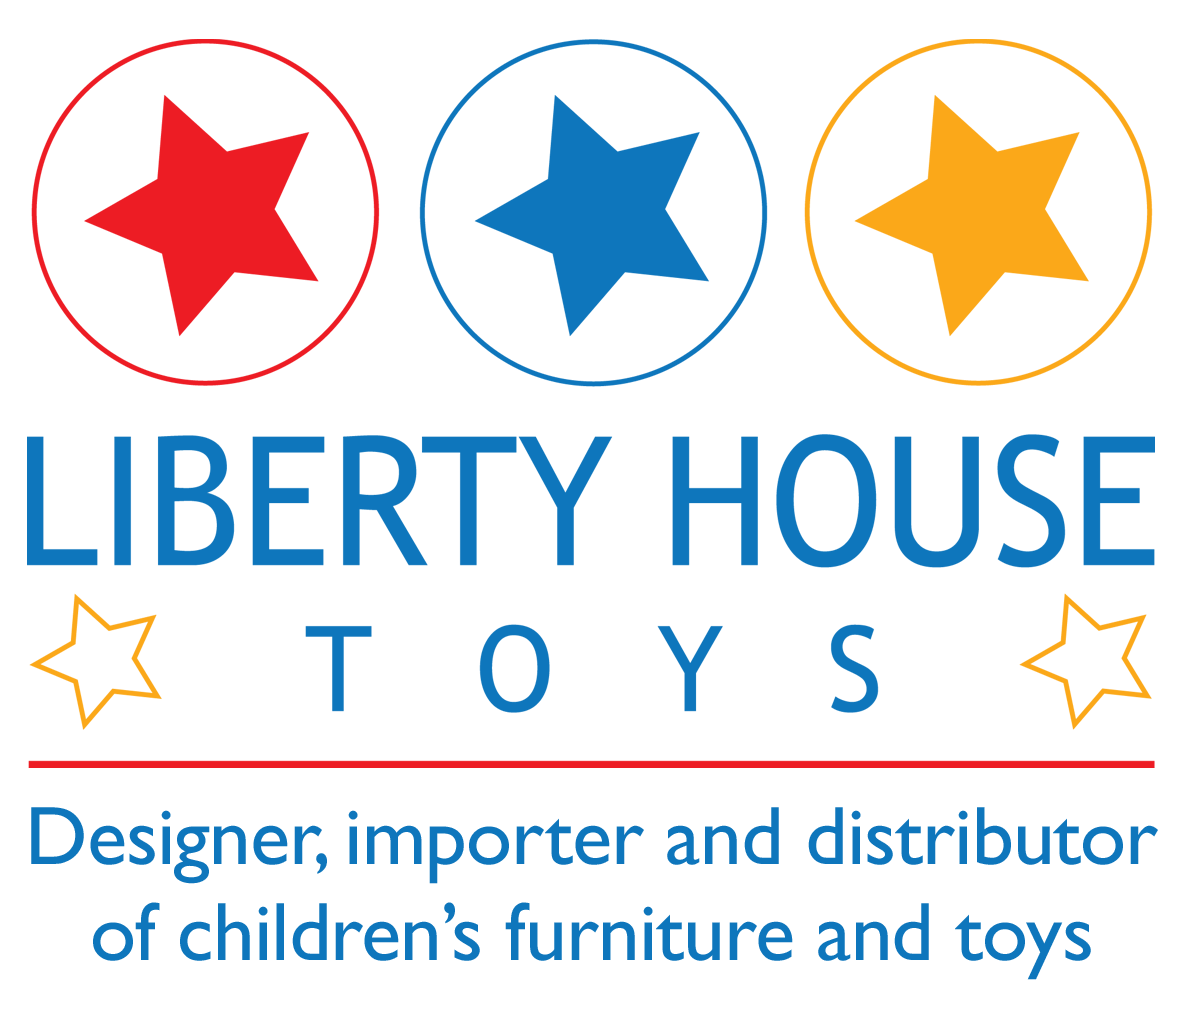 Liberty House Toys